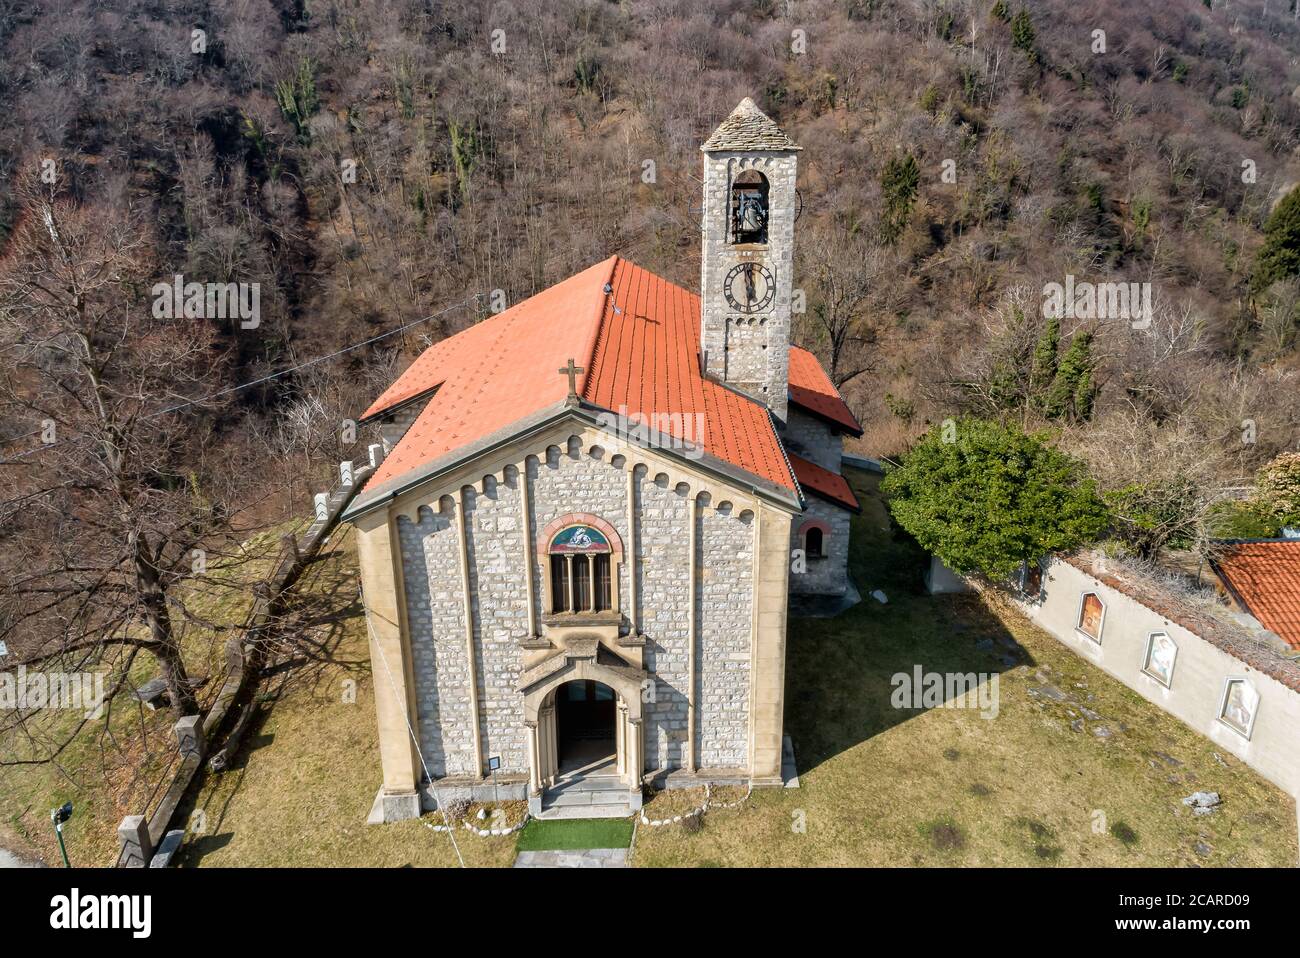 Vue aérienne de l'église Sant Ambrogio située dans le village peint Arcumeggia dans la province de Varèse, Italie Banque D'Images